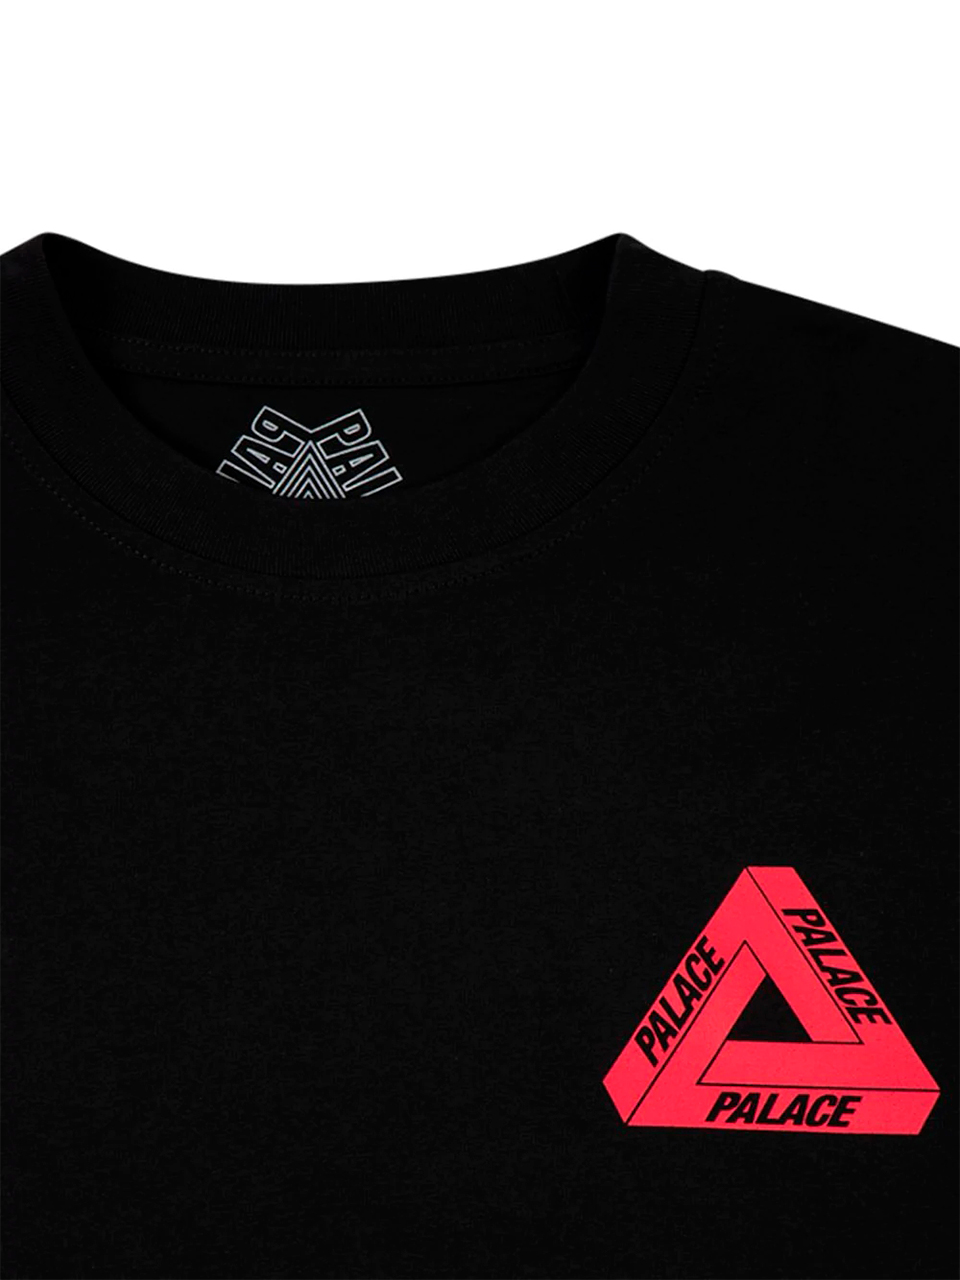 Imagem de: Camiseta Palace Preta Tri-To-Help Logo Vermelho